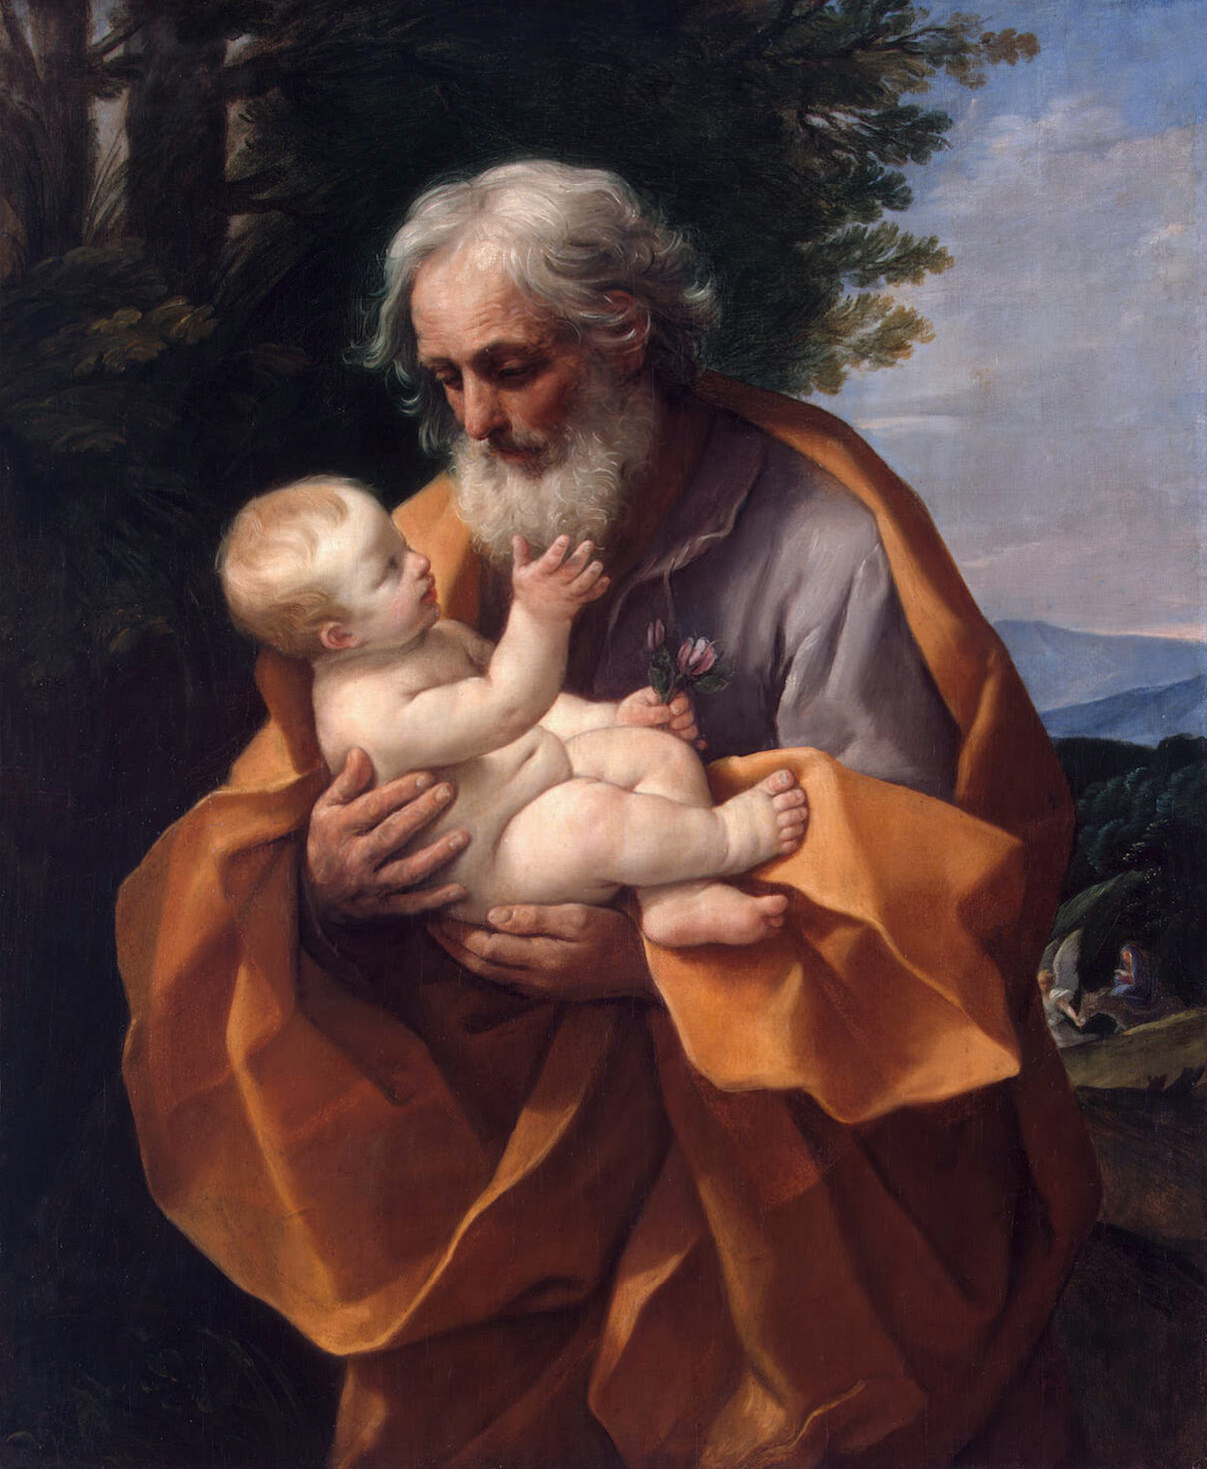 Bức tranh “Saint Joseph With the Infant Jesus” (Thánh Joseph và Chúa Hài Đồng), khoảng năm 1635, của họa sỹ Guido Reni. (Ảnh: Tư liệu công cộng)